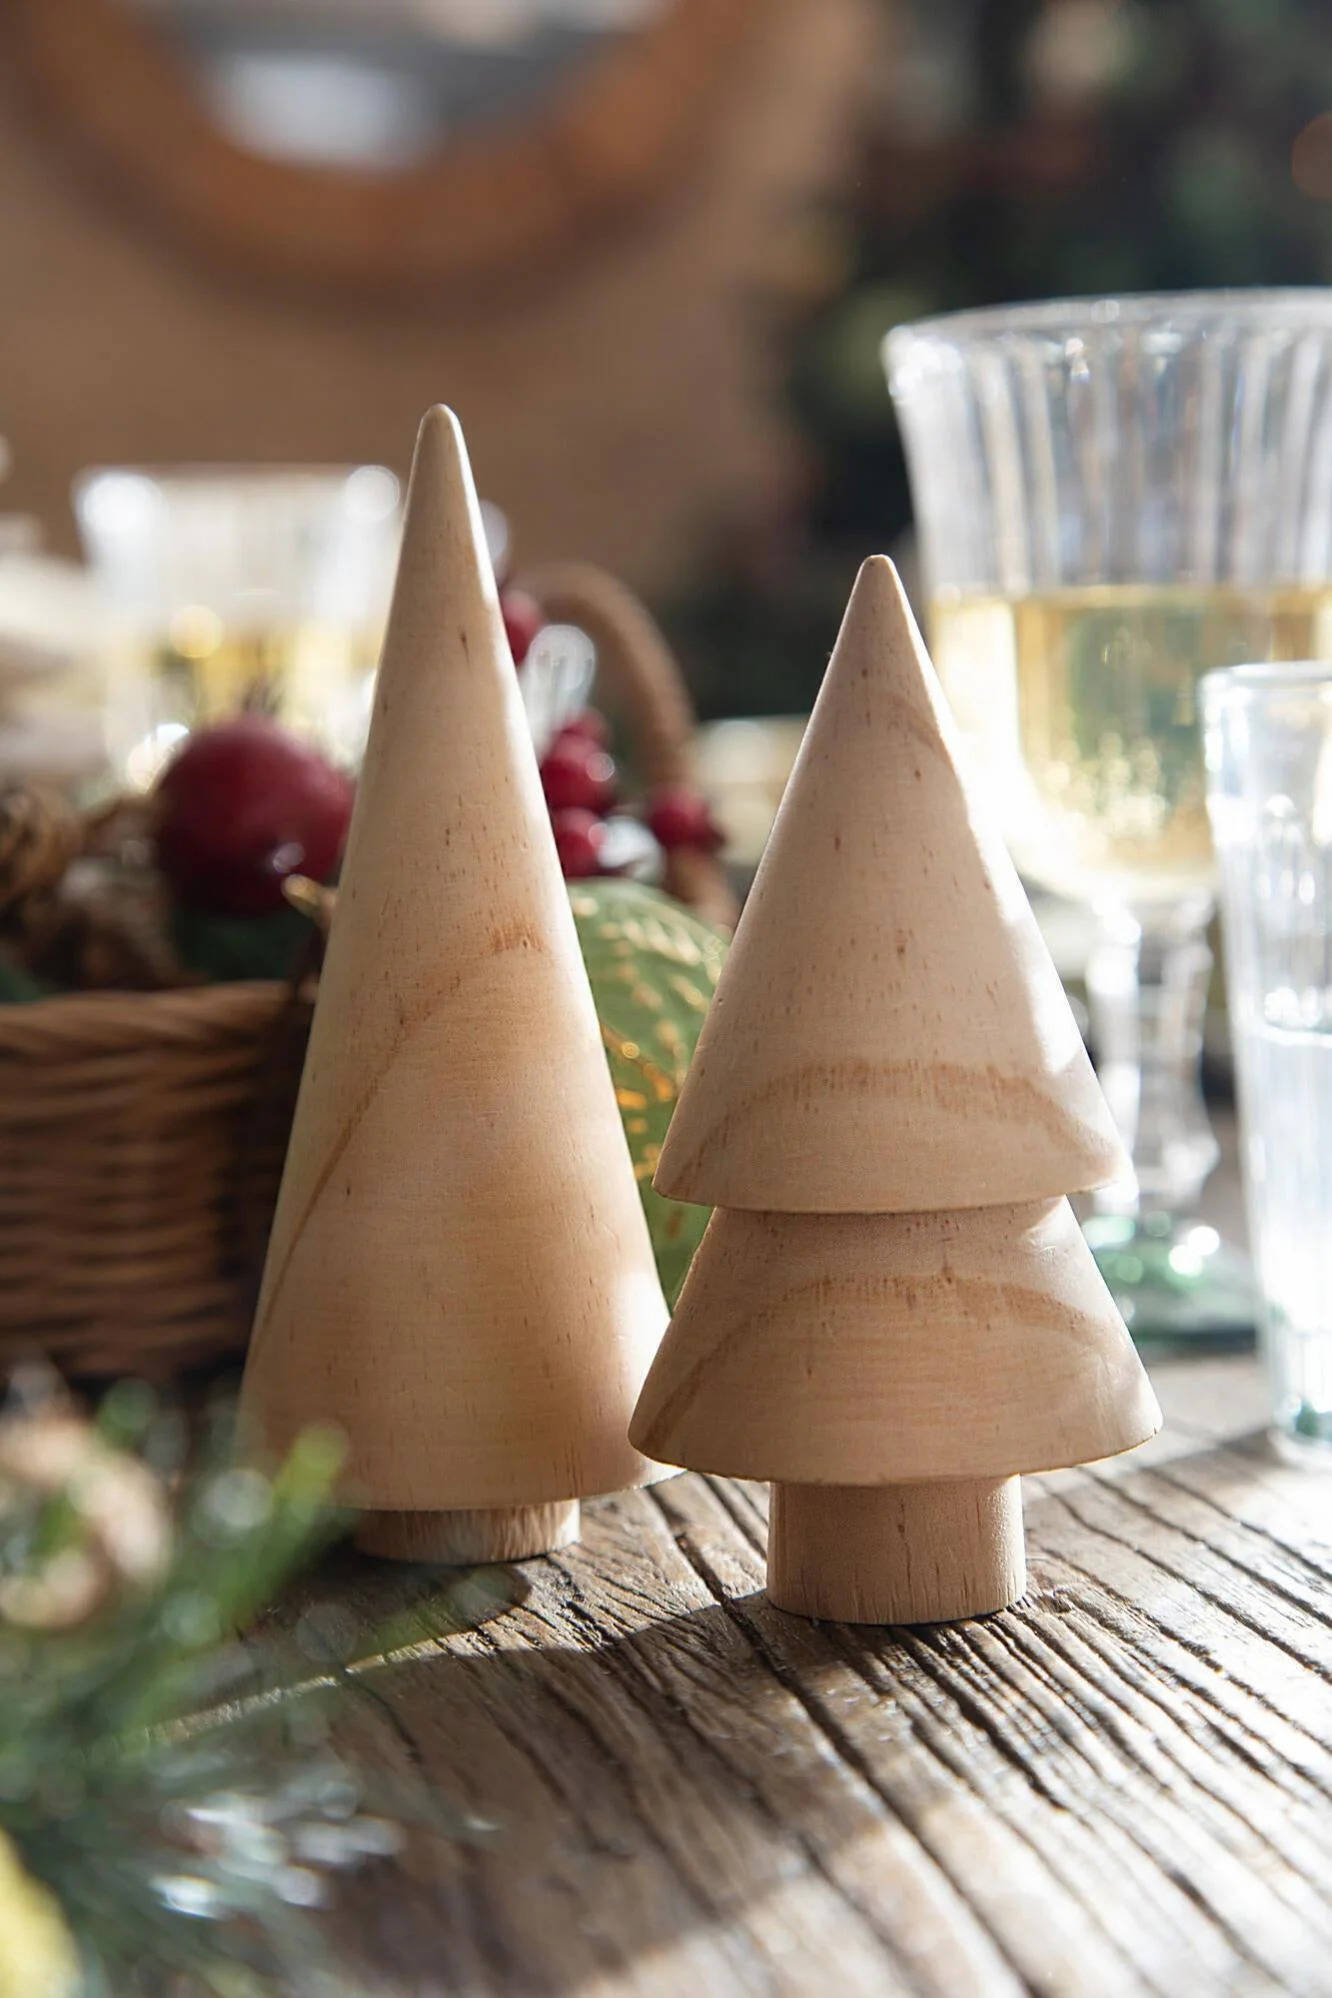 Árboles de Navidad de mesa de madera de Leroy Merlin.